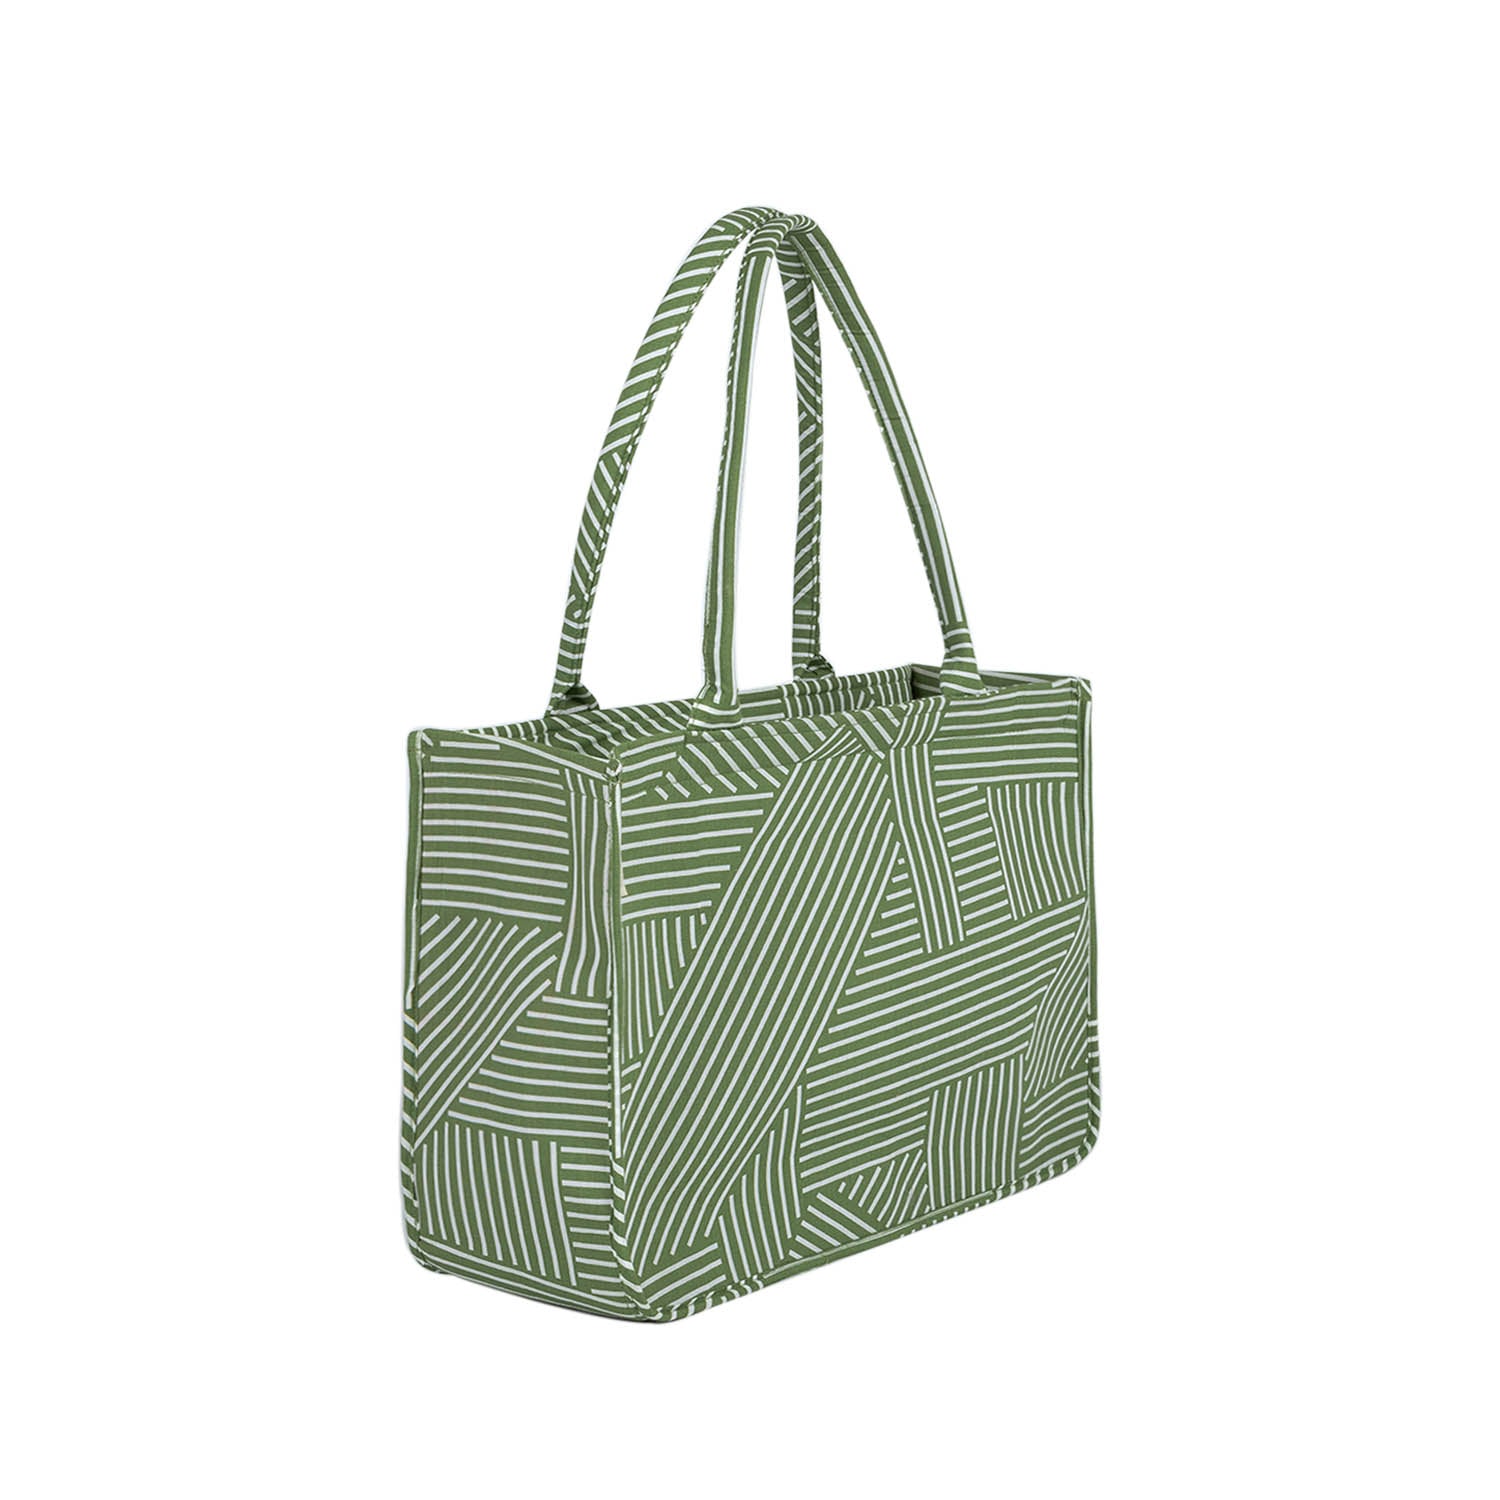 Medium Mimi - Green Printed Tote Bag